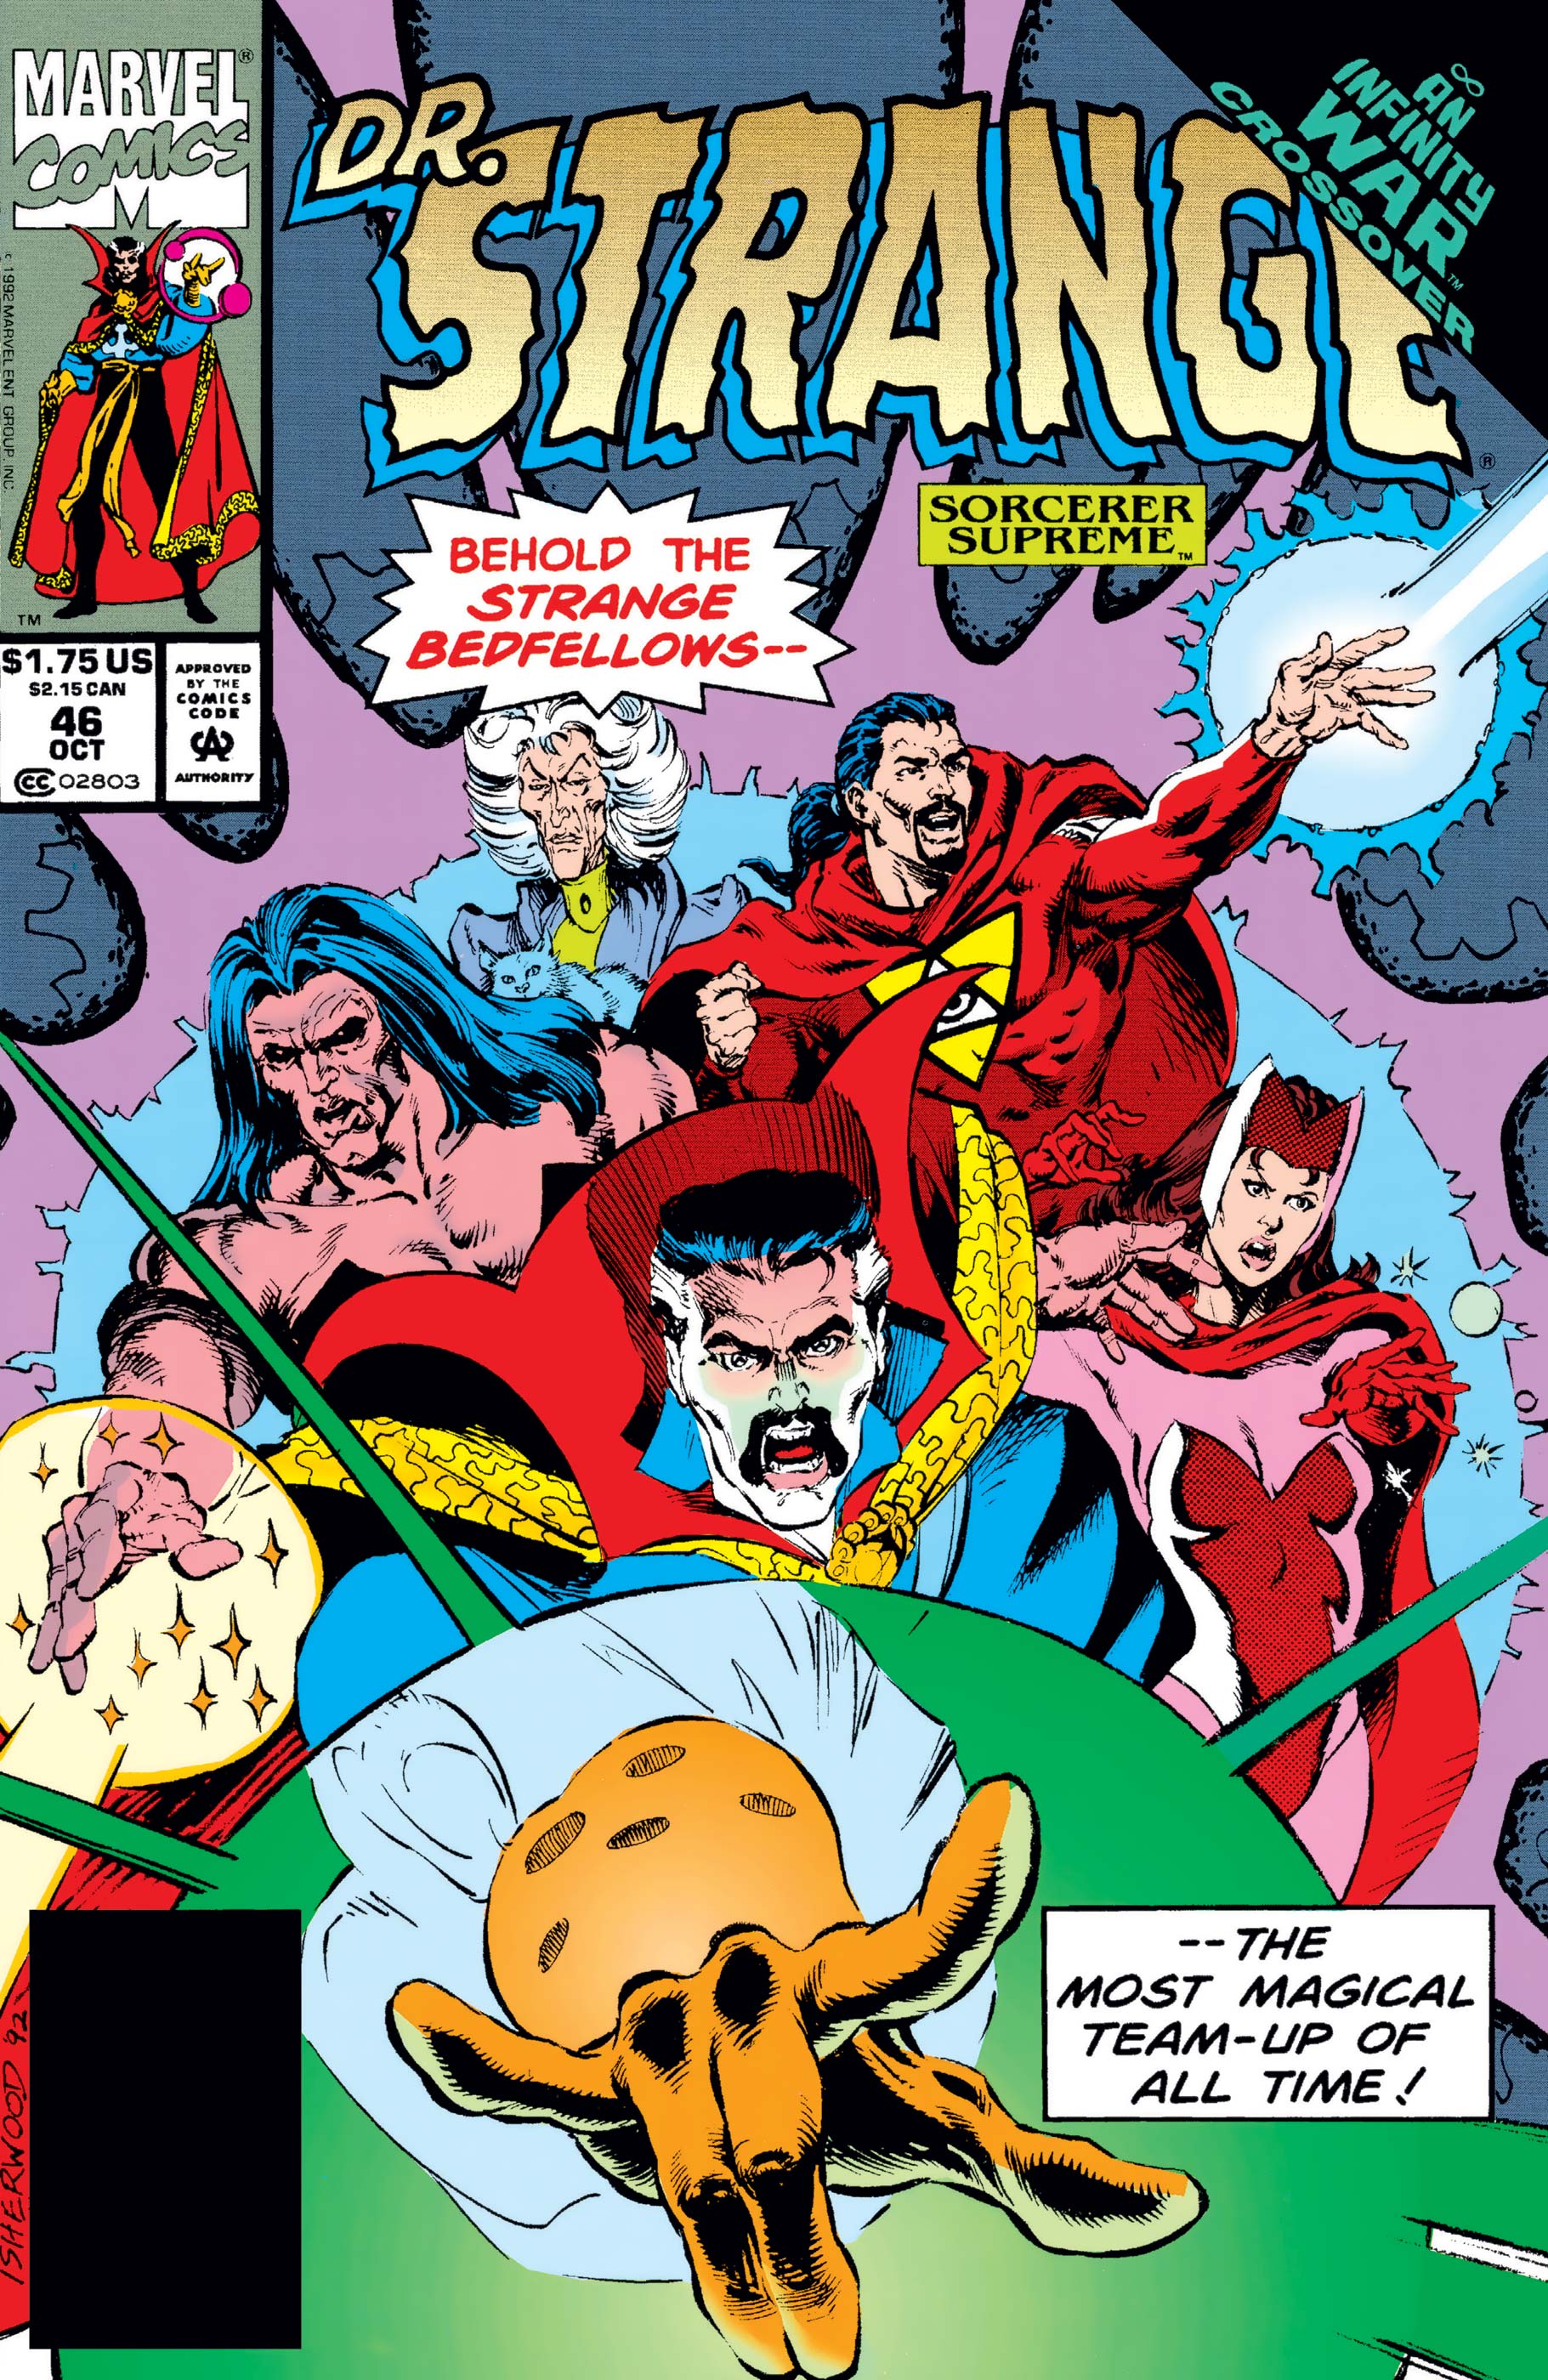 Portada de Doctor Strange: Sorcerer Supreme #46